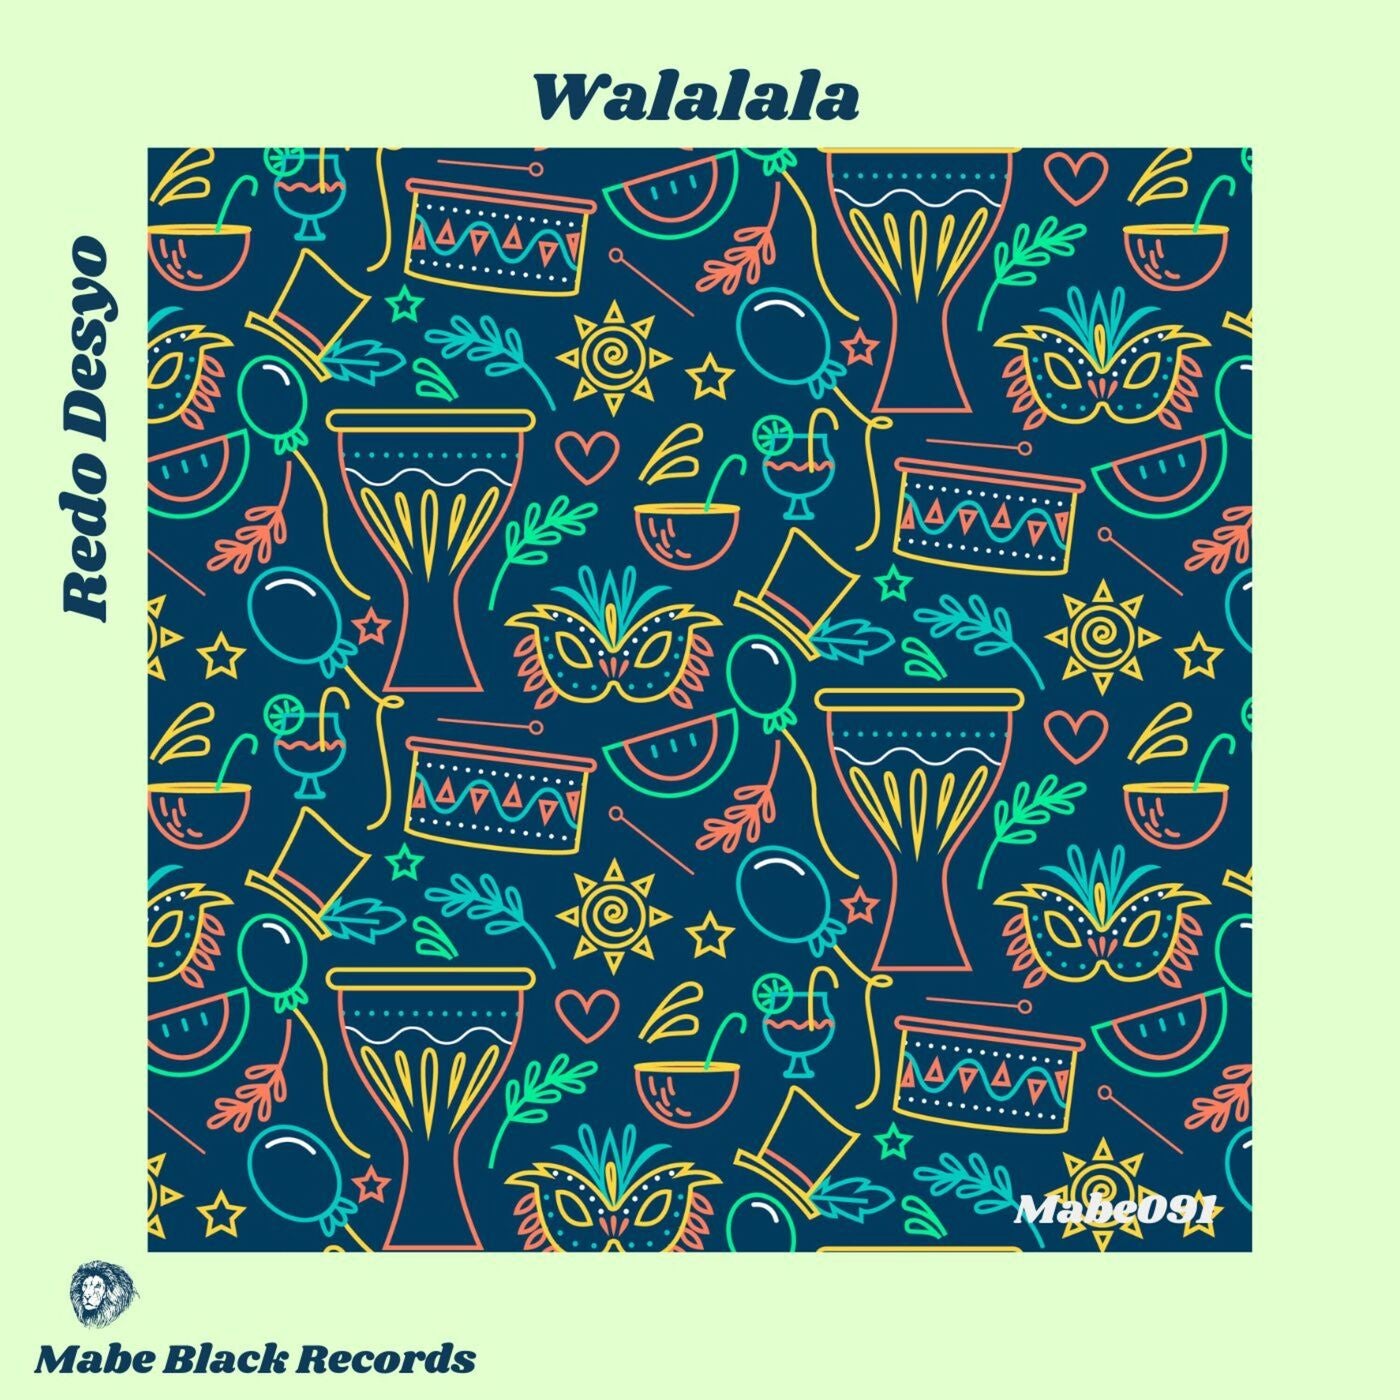 Walalala